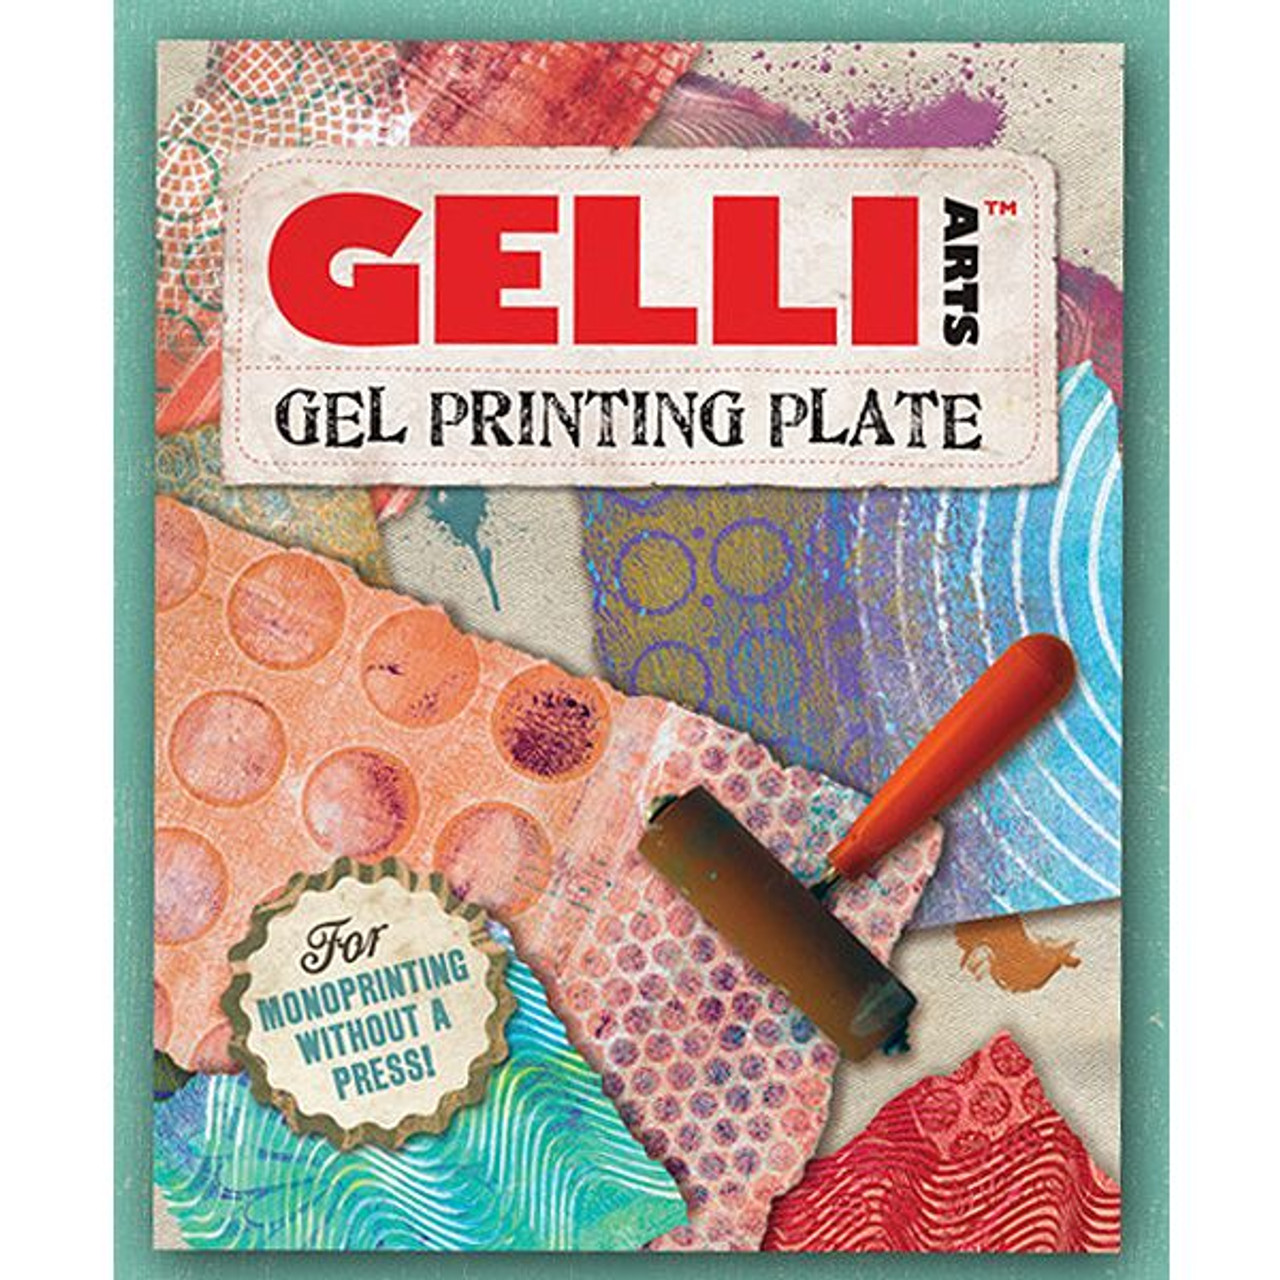 Gelli Arts 3 x 5 Gel Printing Plate